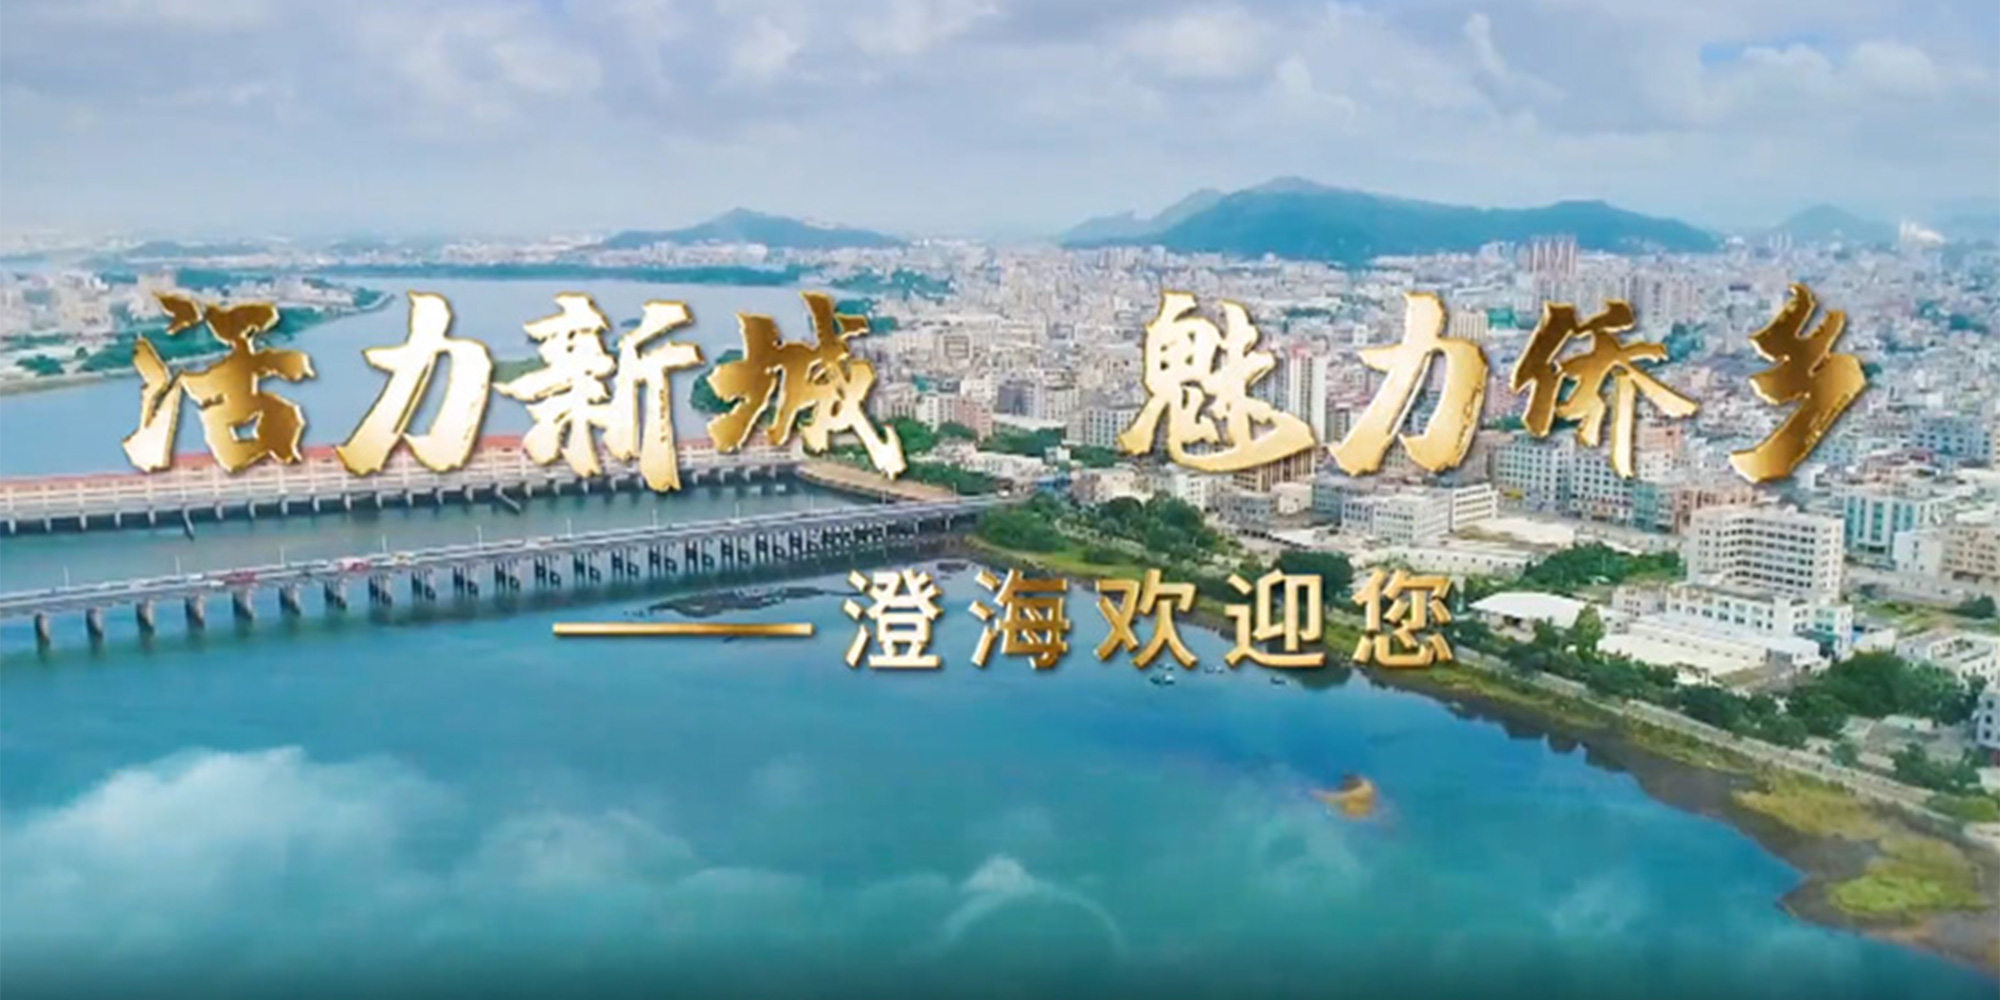 【視頻】活力新城 魅力僑鄉——澄海歡迎您